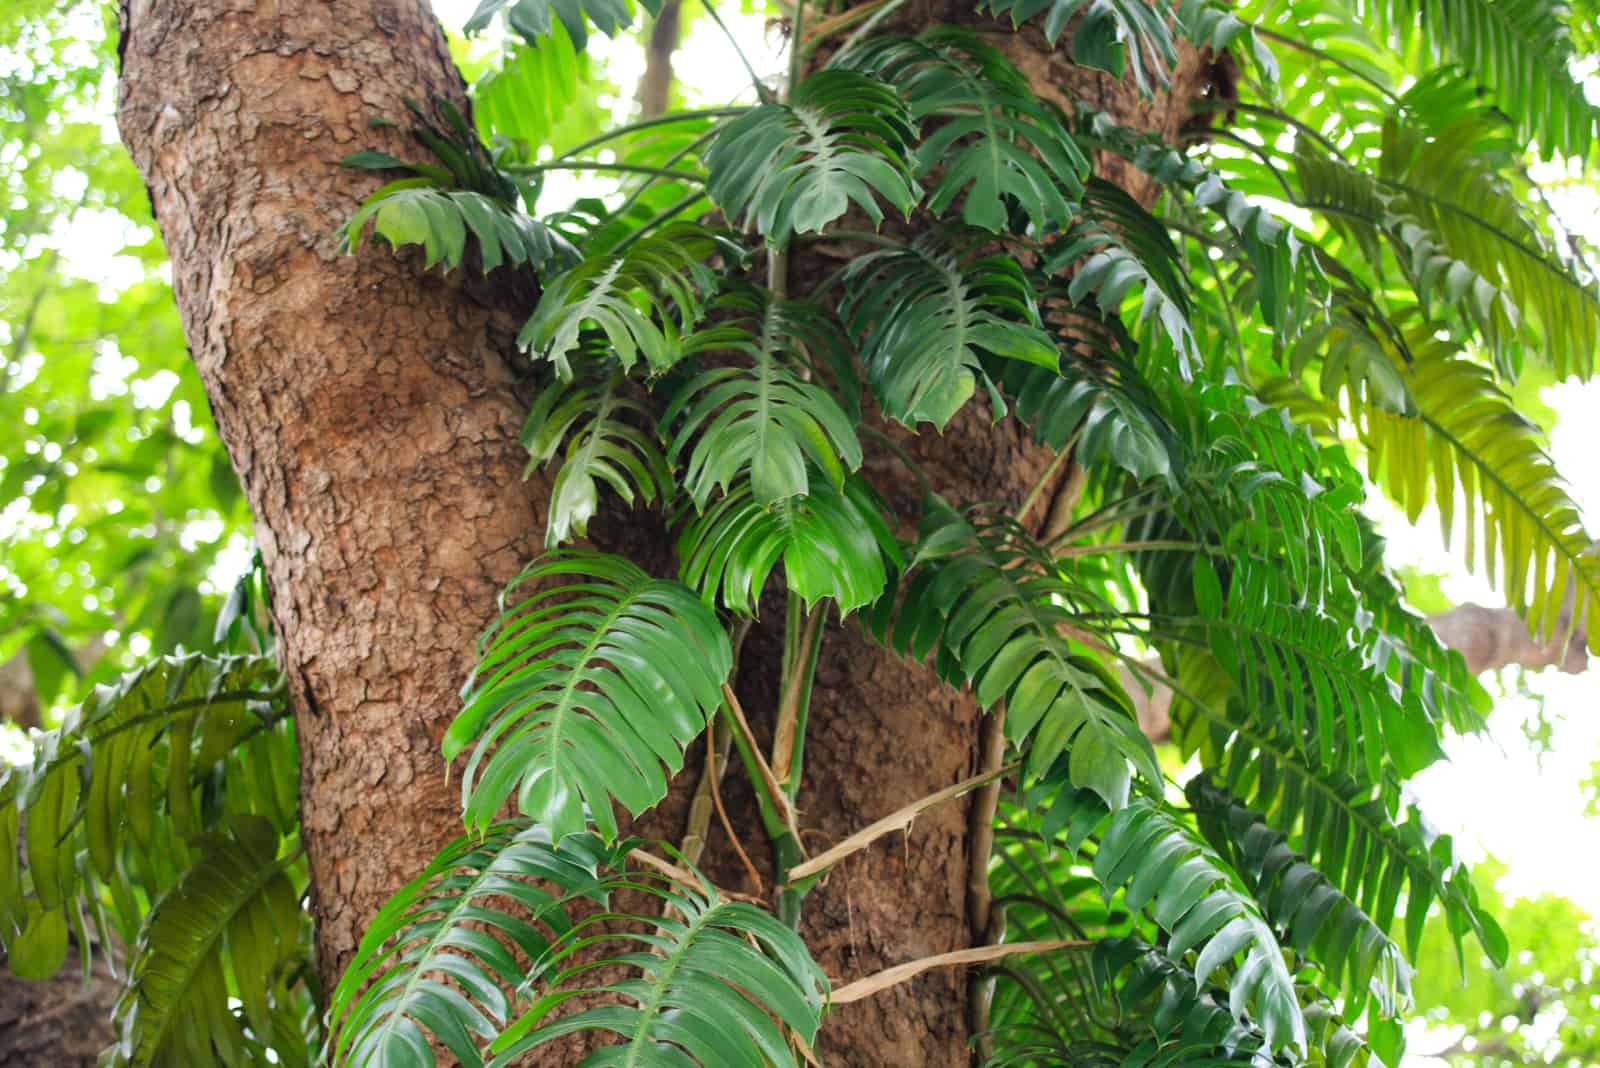 Rhaphidophora Decursiva plant in the wood